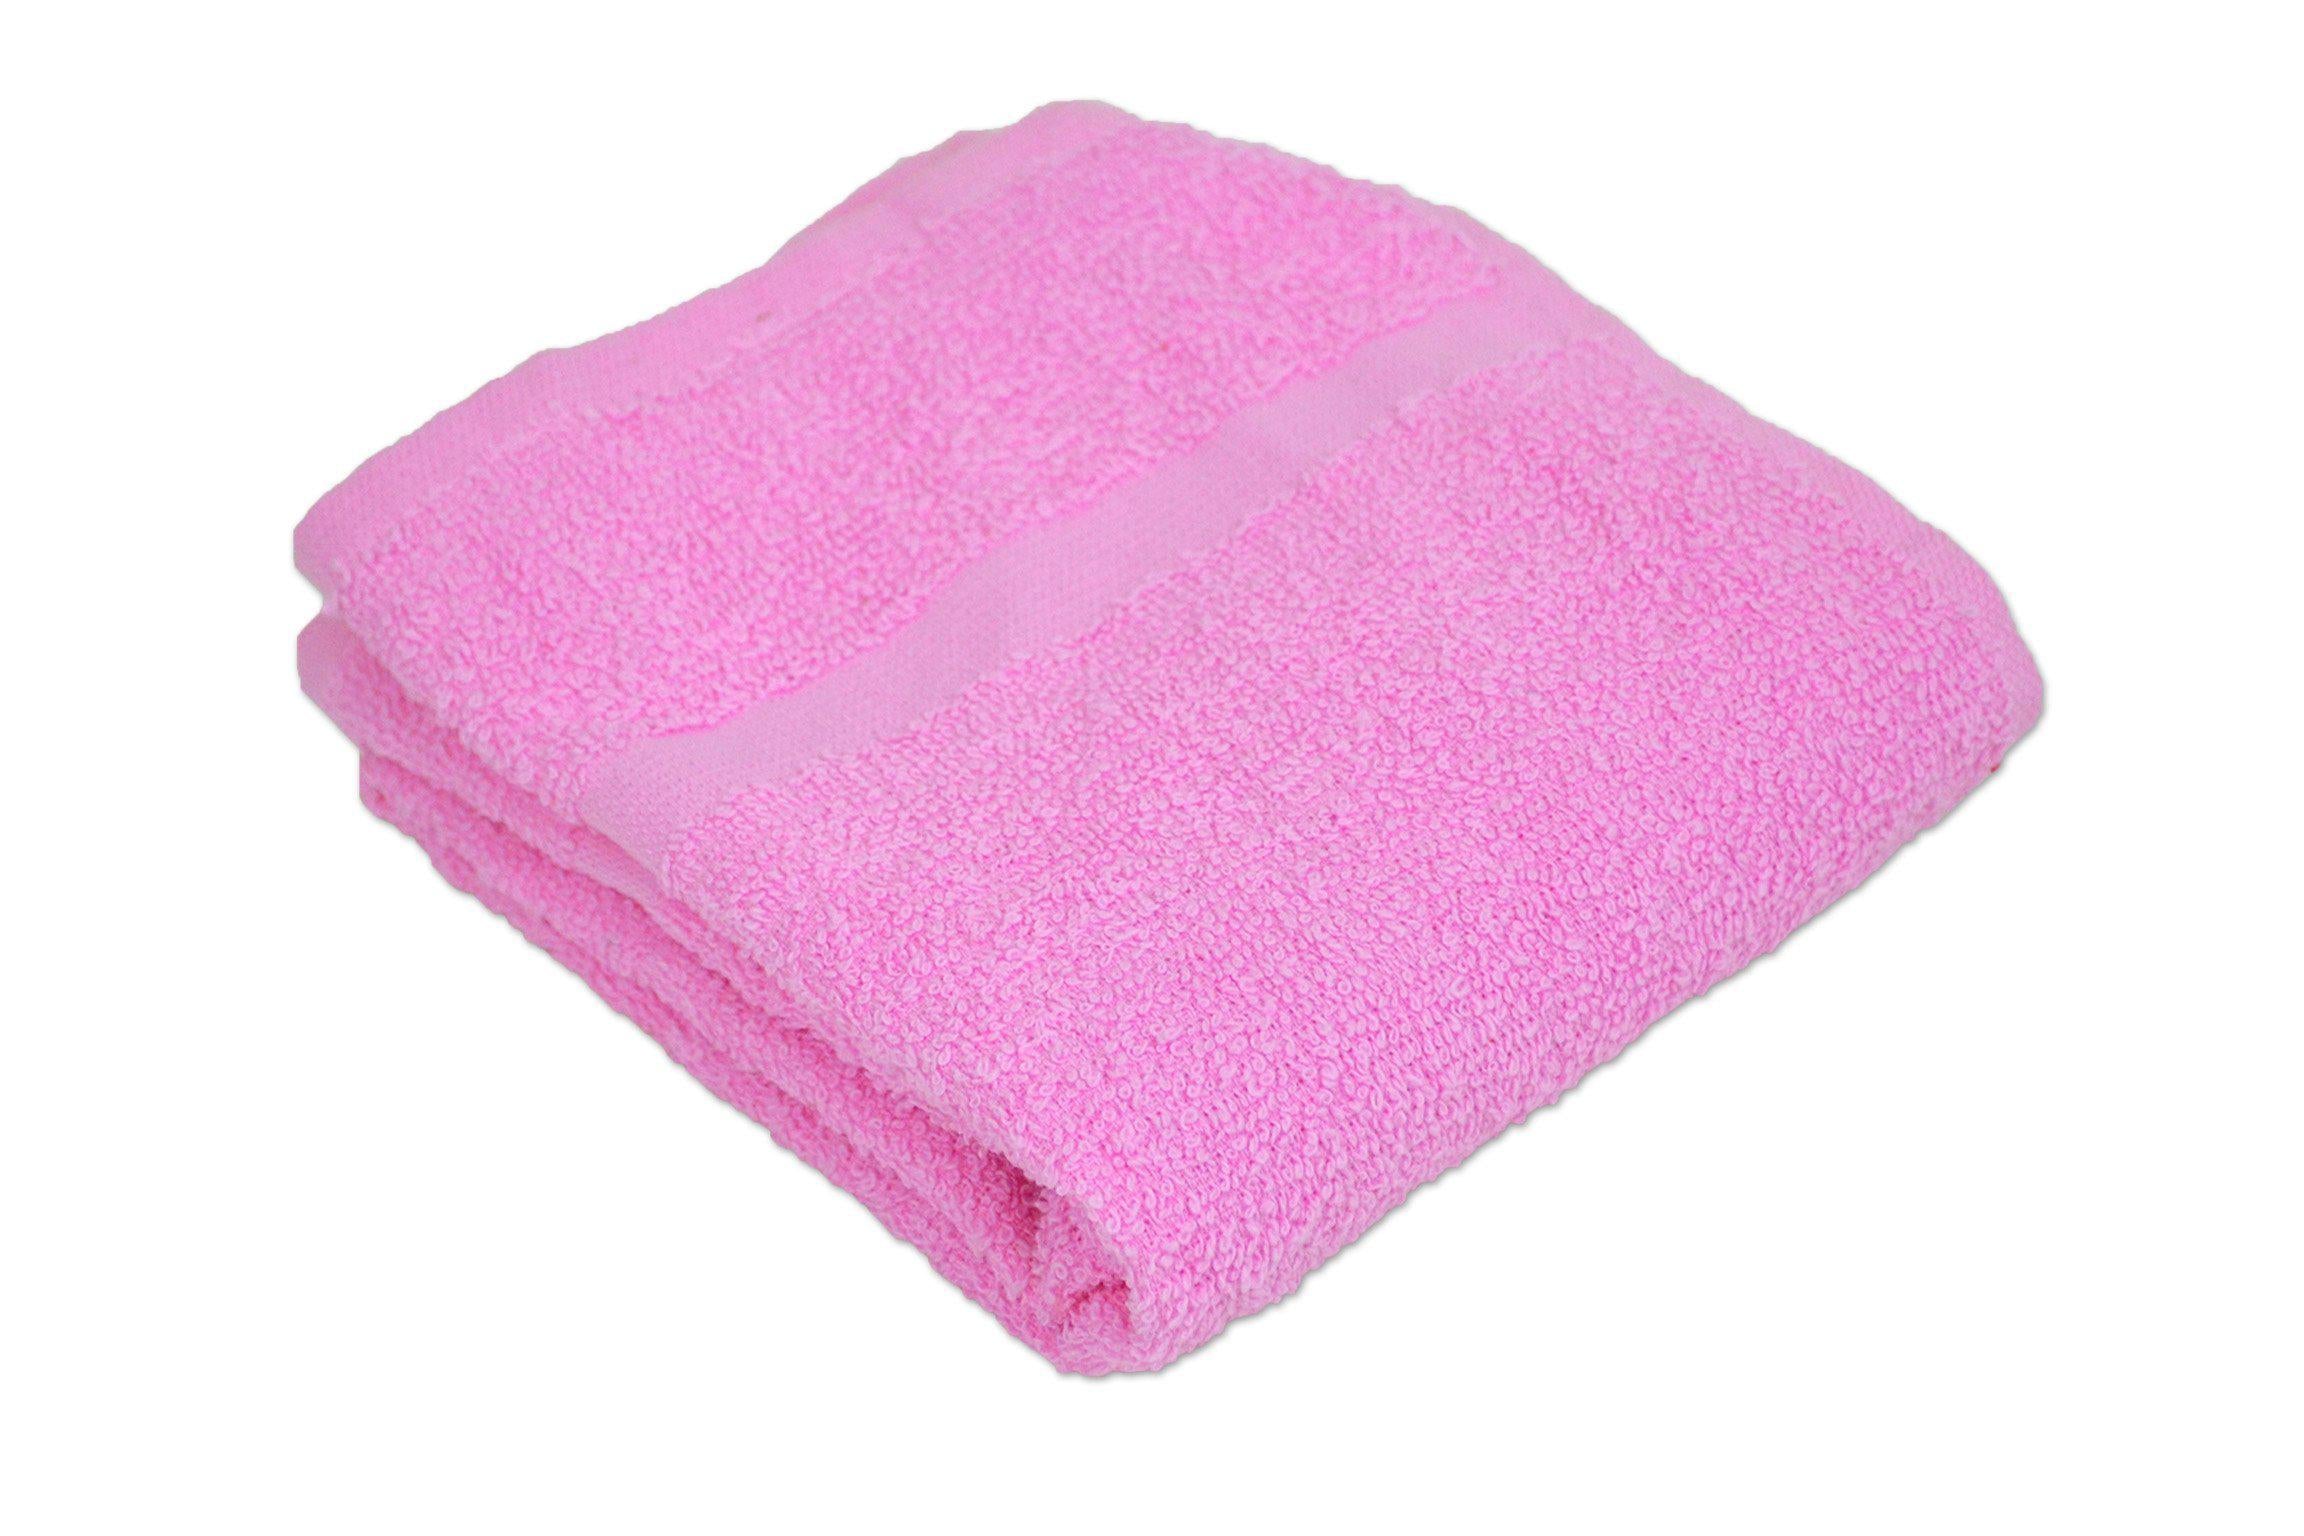 Wholesale Salon Towels: A Buyer's Guide